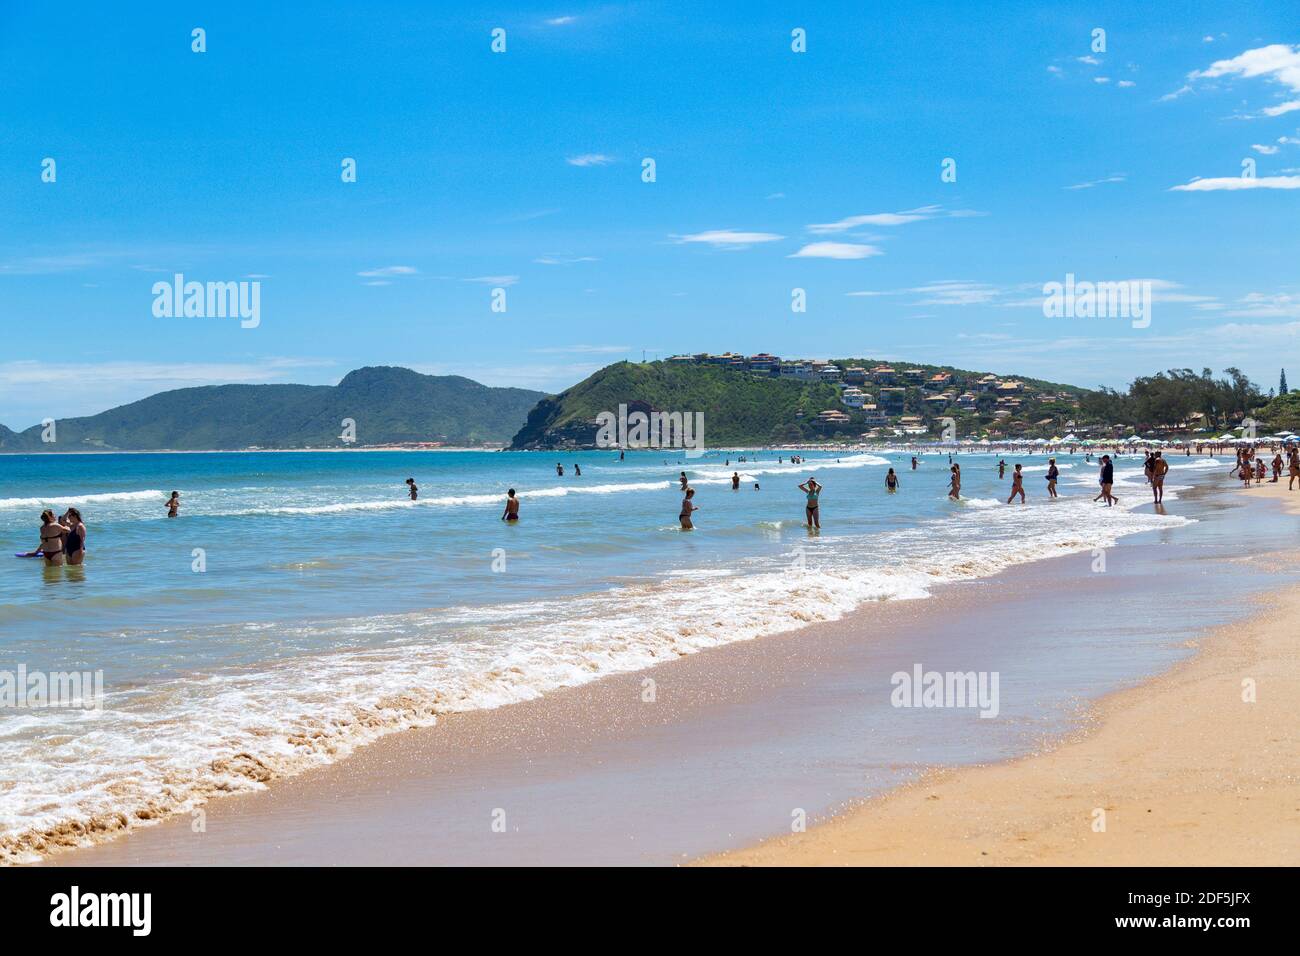 Buzios, Rio de Janeiro, Brésil – 22 décembre 2019 : Praia da Geriba, vue panoramique de cette belle plage. Les gens se baignent dans l'eau de la turqoise. Banque D'Images